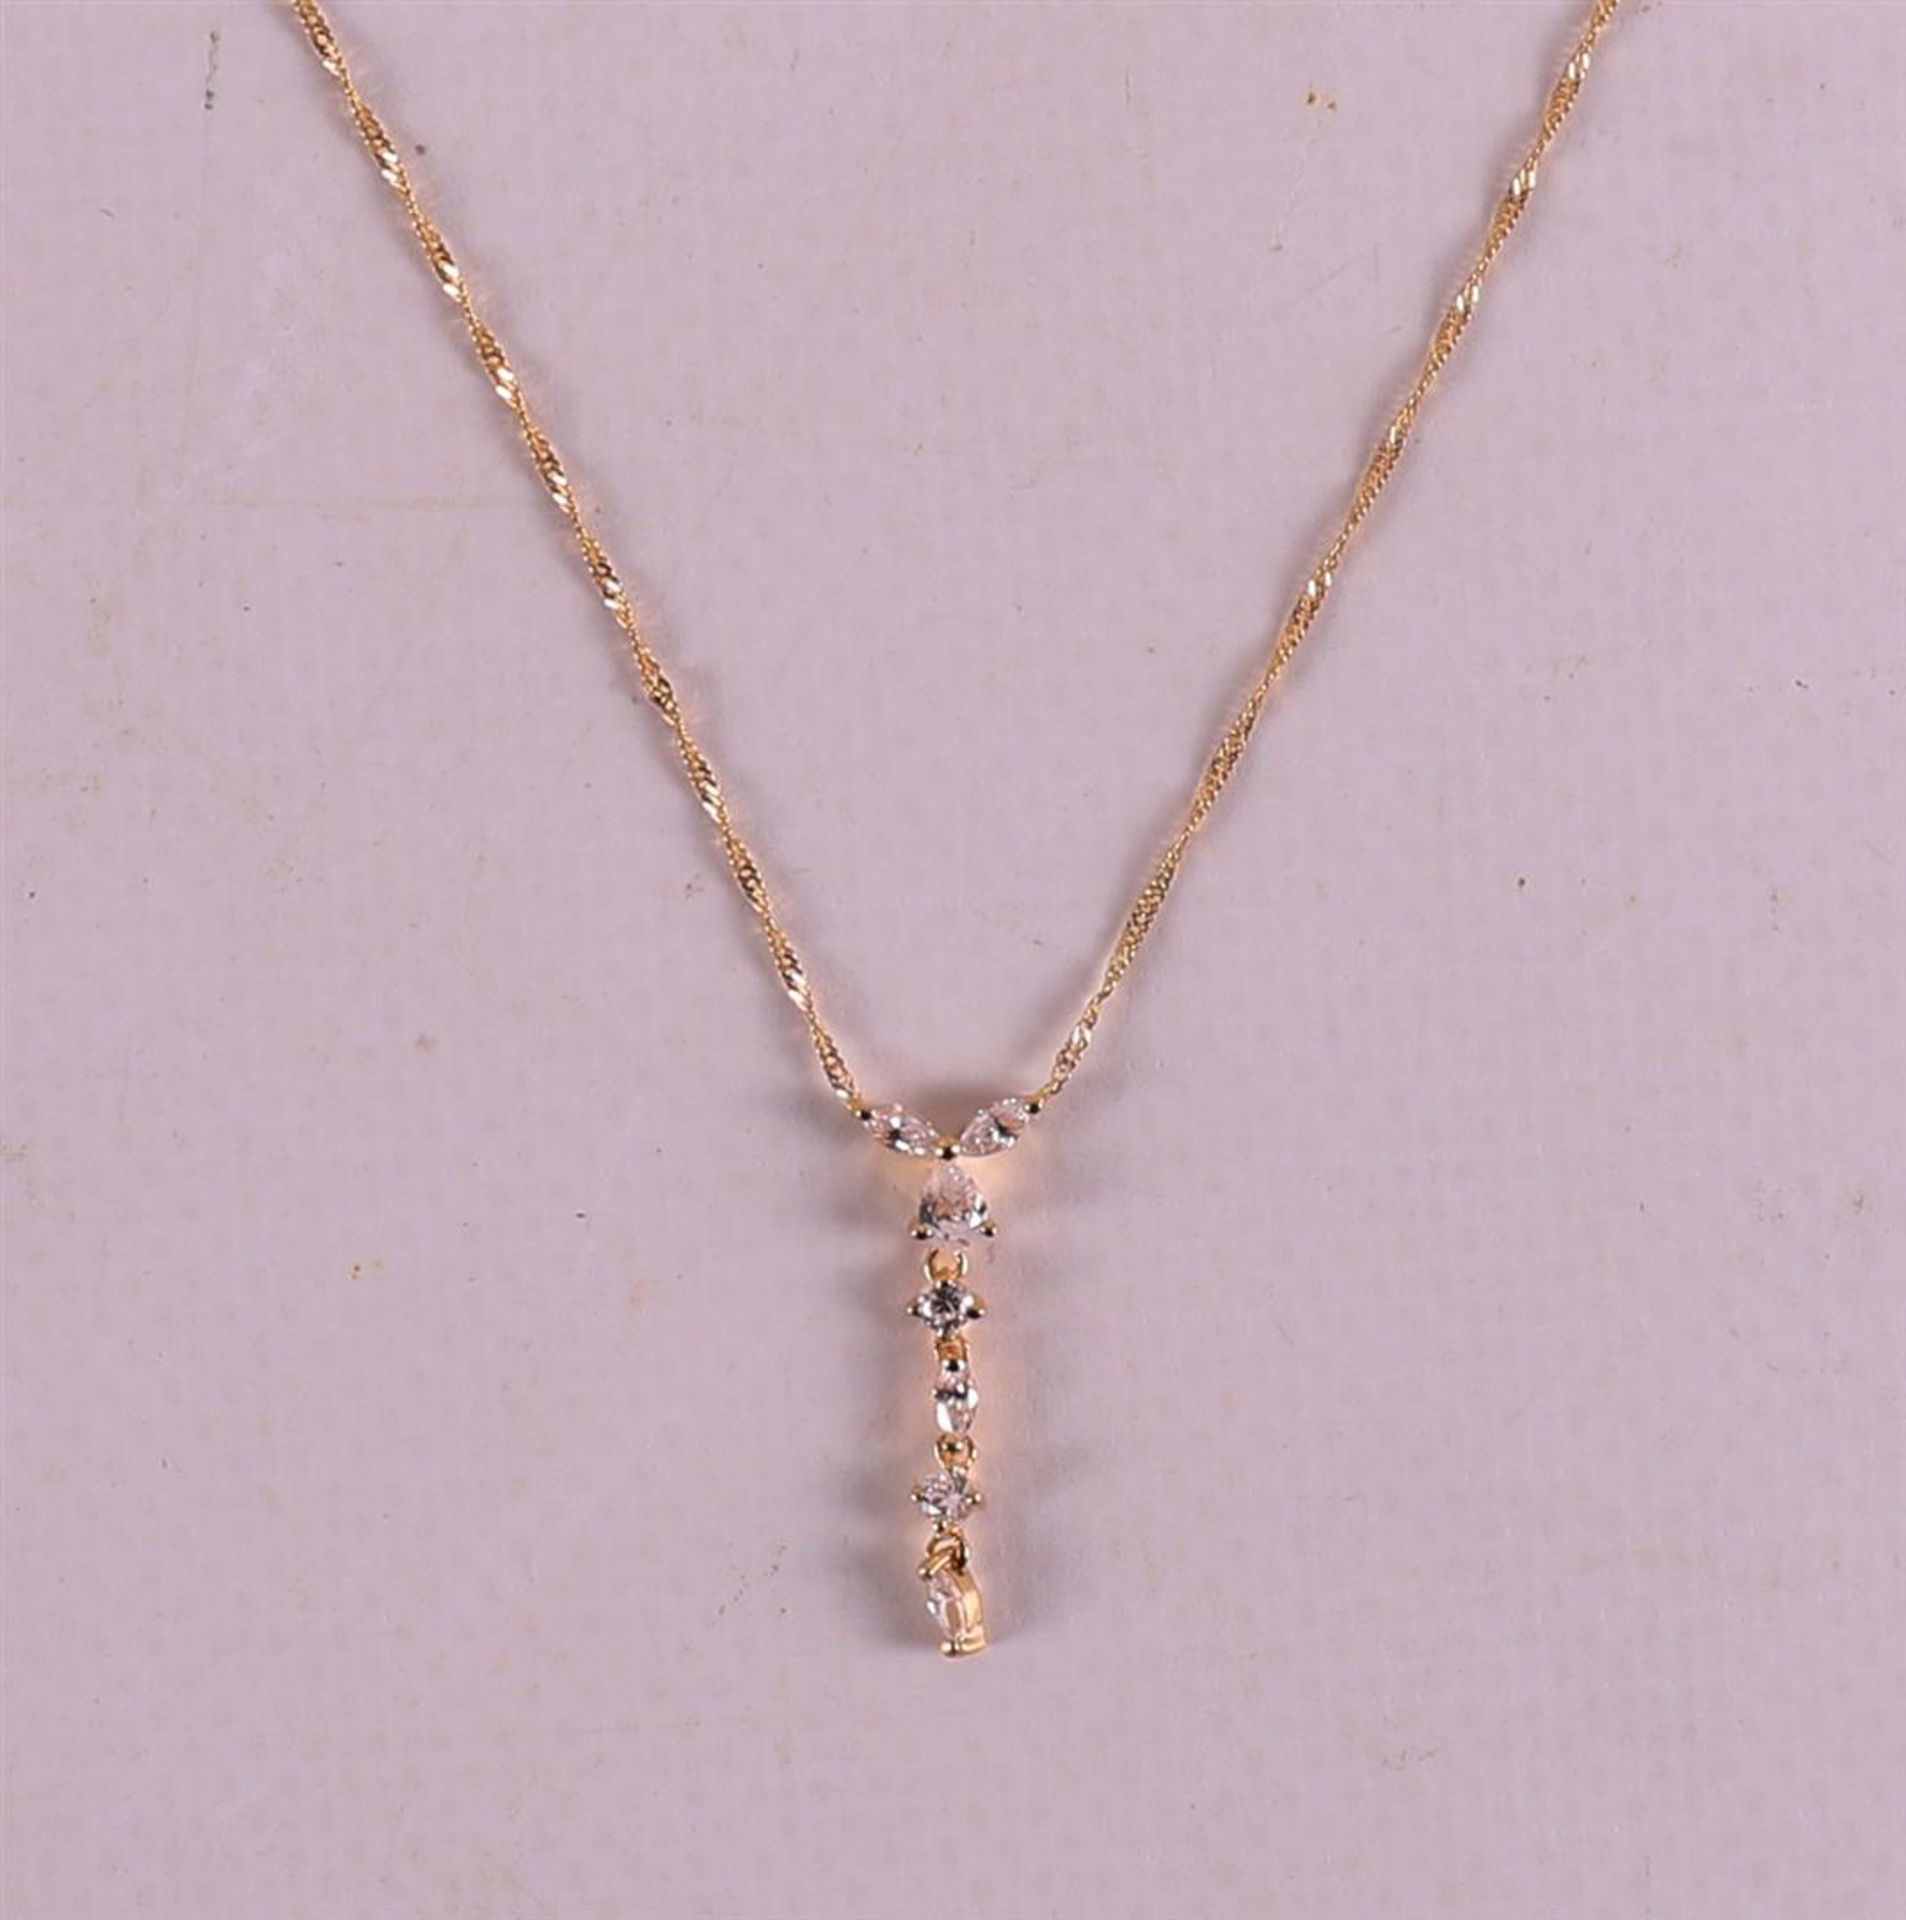 An 18 kt 750/1000 gold necklace with zirconias. - Bild 2 aus 3